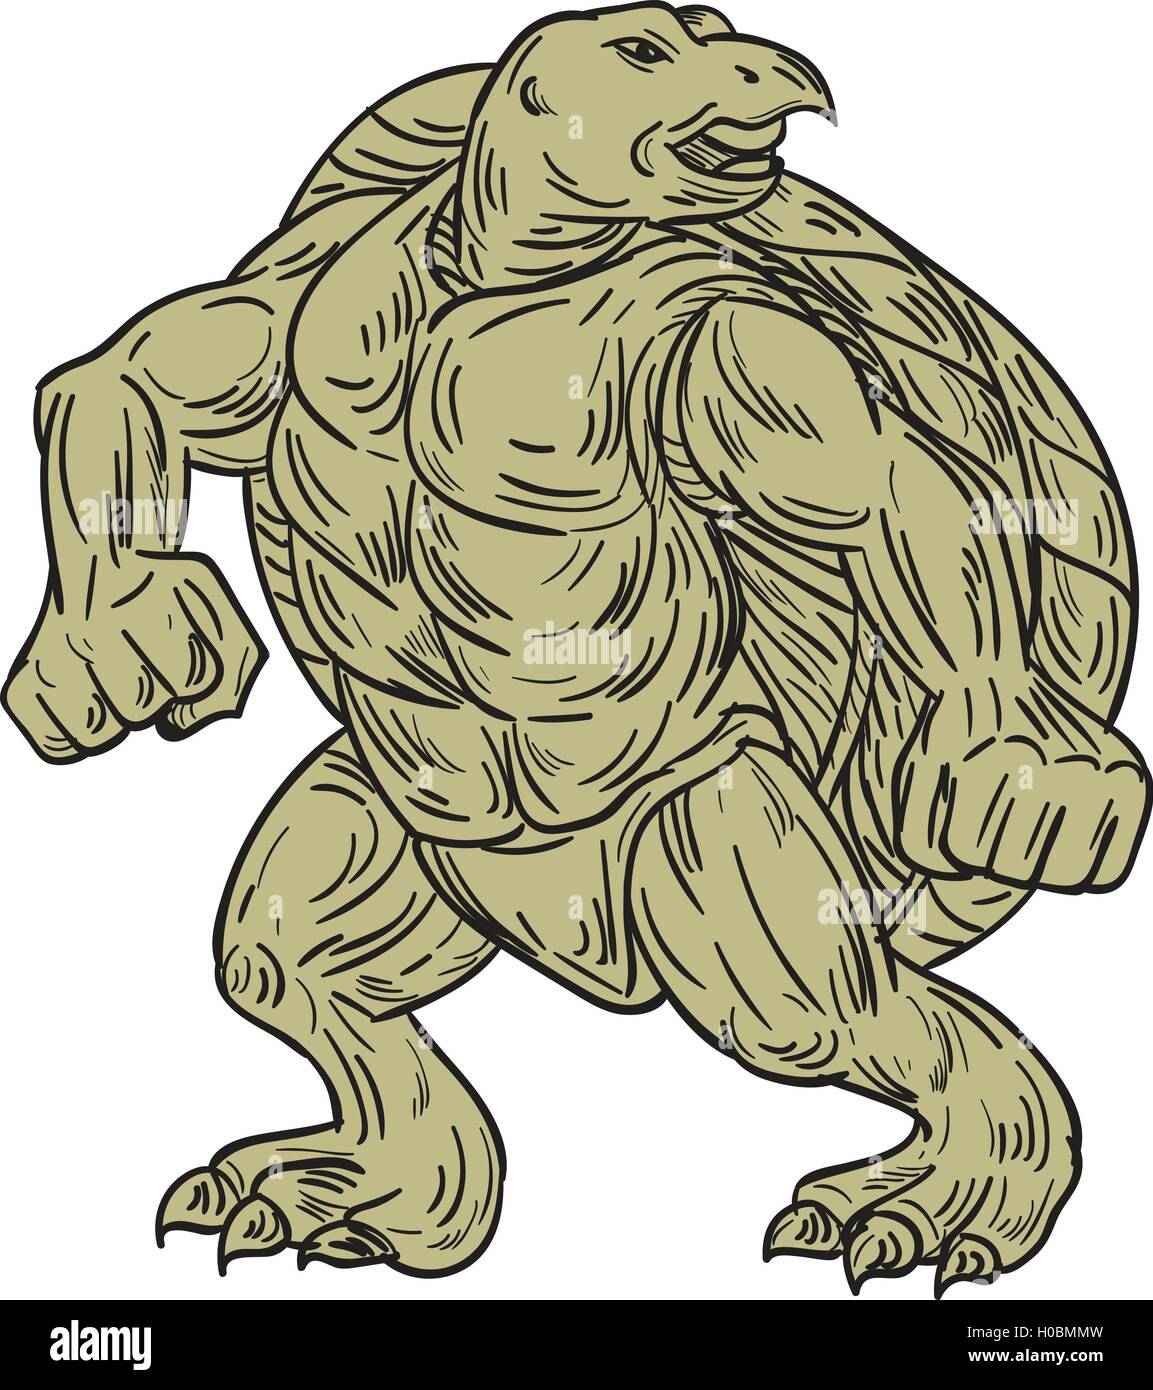 Style croquis dessin illustration d'une tortue de Kemp Lepidochelys kempii tortue de mer ou dans une position d'arts martiaux vu de l'avant ensemble isolées sur fond blanc. Illustration de Vecteur